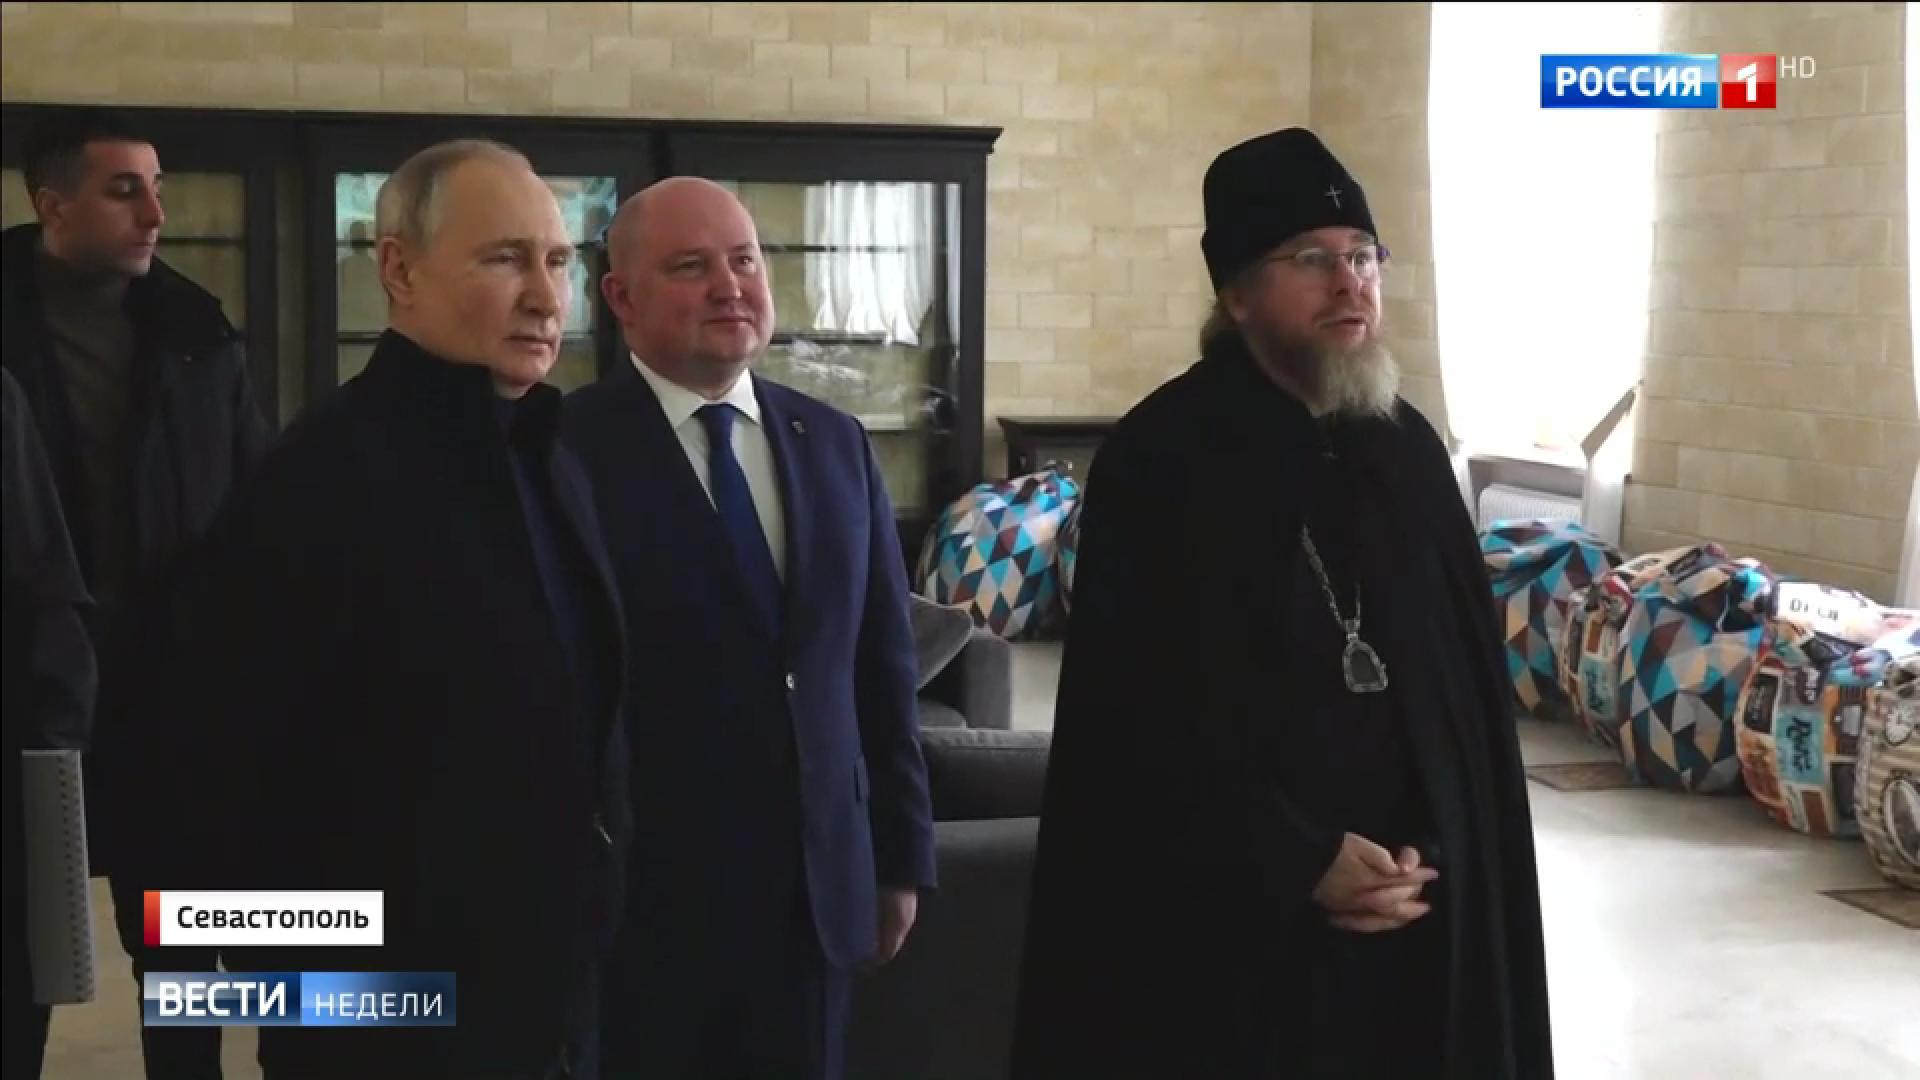 Putin w sportowym stroju w towarzystwie urzędnika w garniturze i popa w sutannie